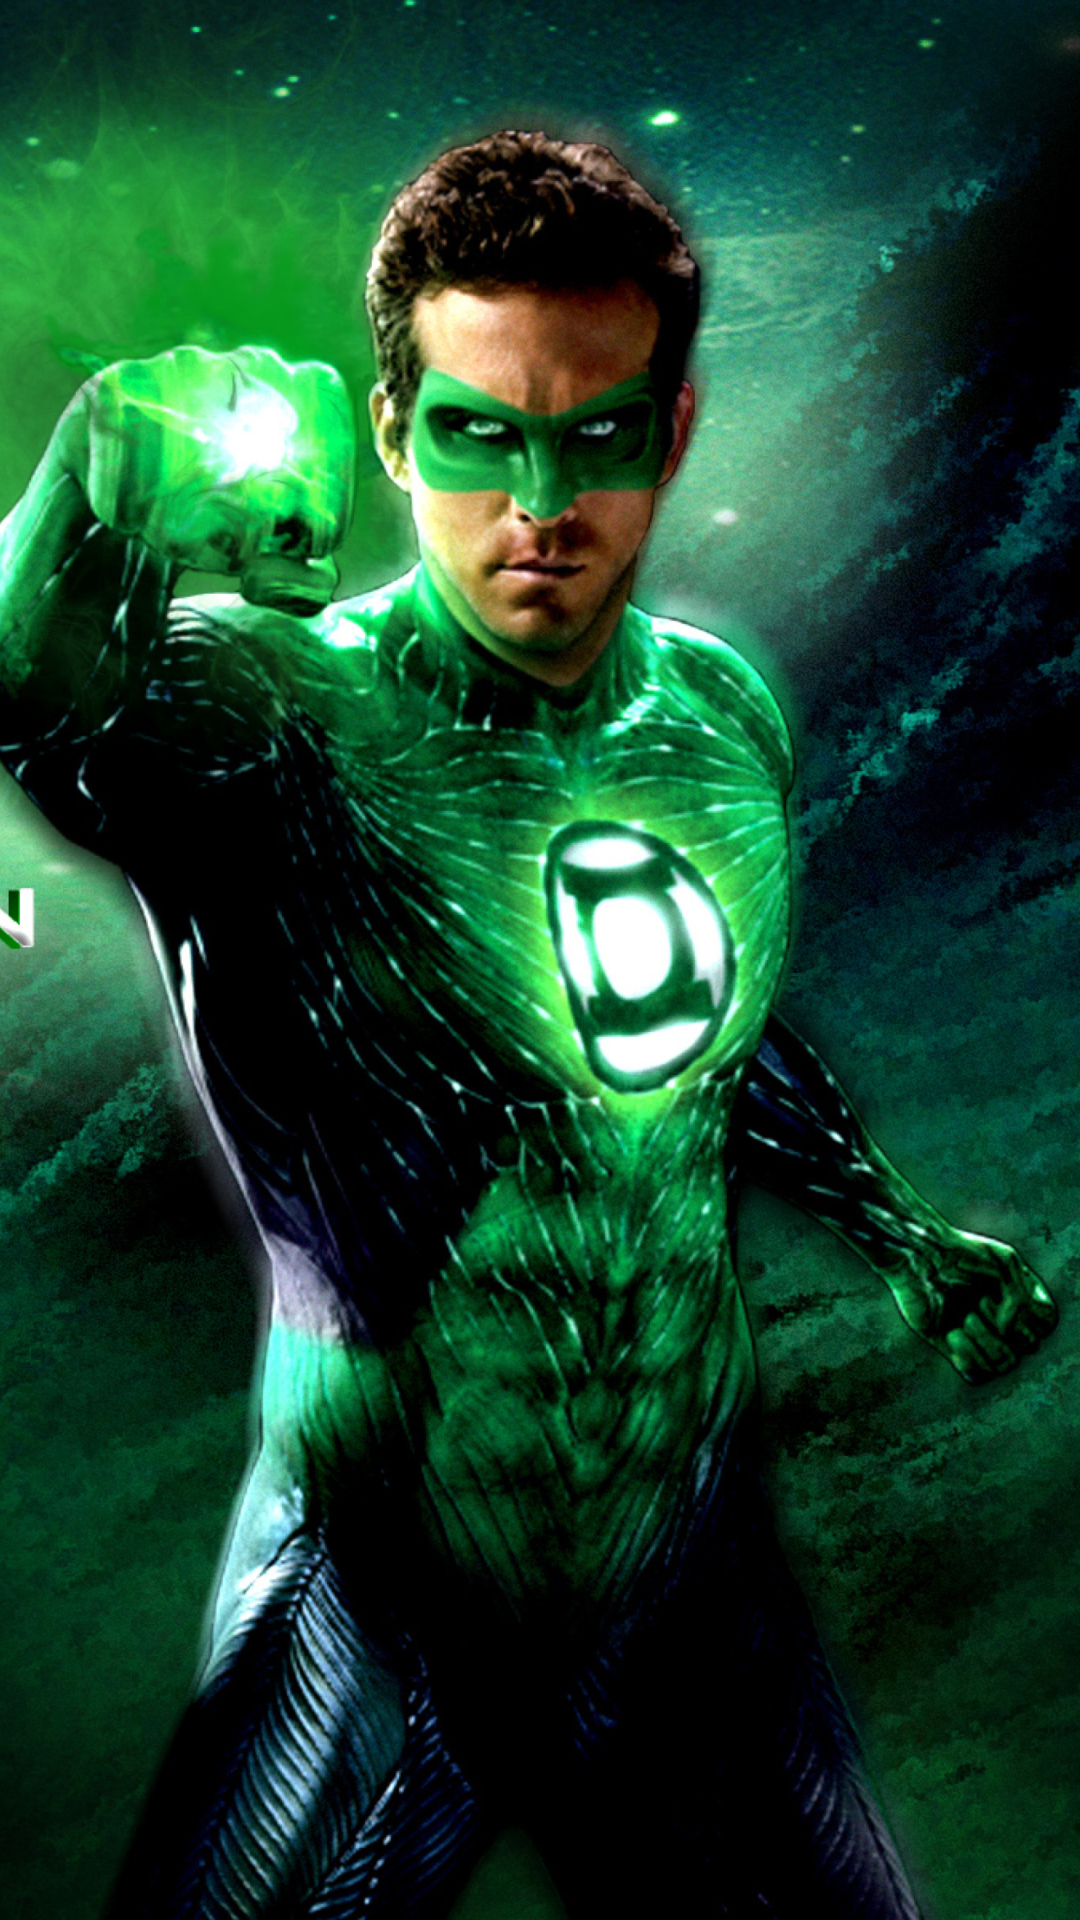 fond d'écran iphone lanterne verte,la lanterne verte,personnage fictif,super héros,ligue de justice,film